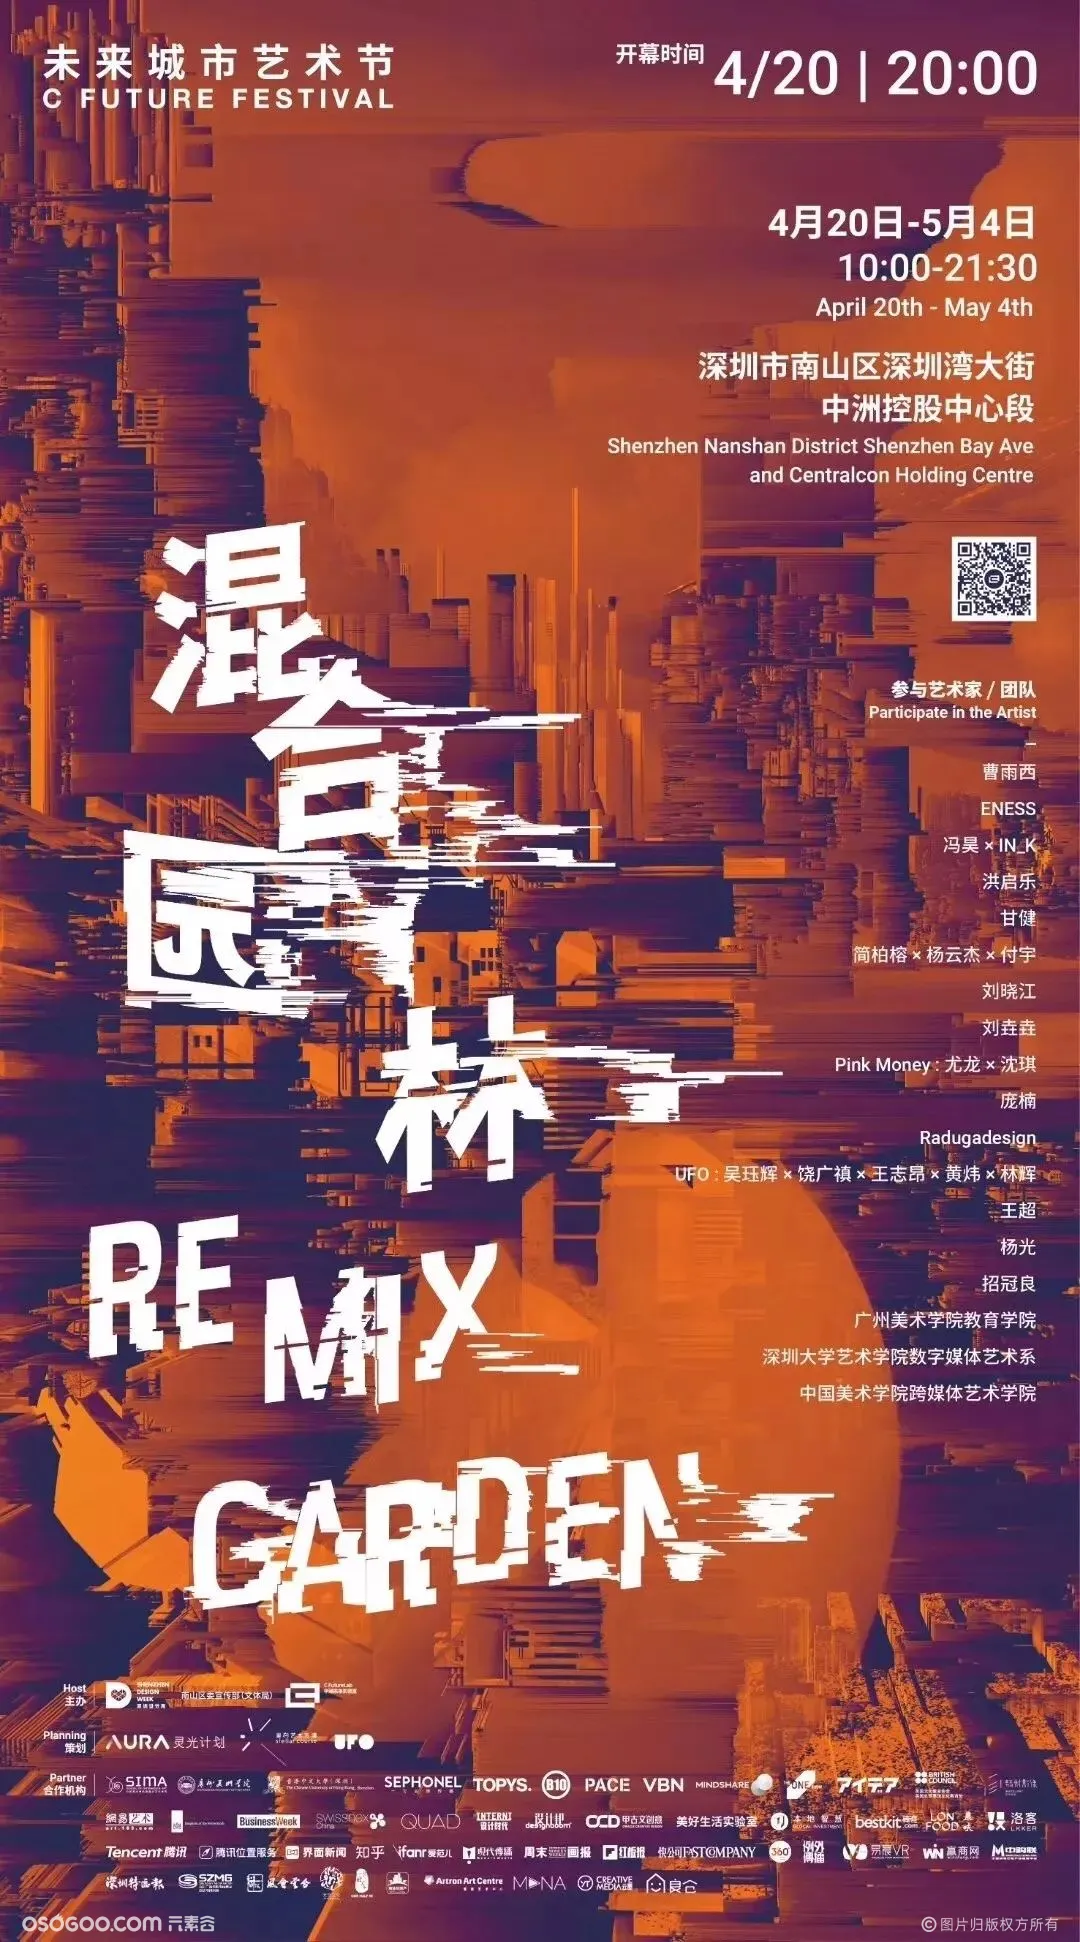 深圳邀你共赴一场有关科技、艺术与未来城市的盛会 